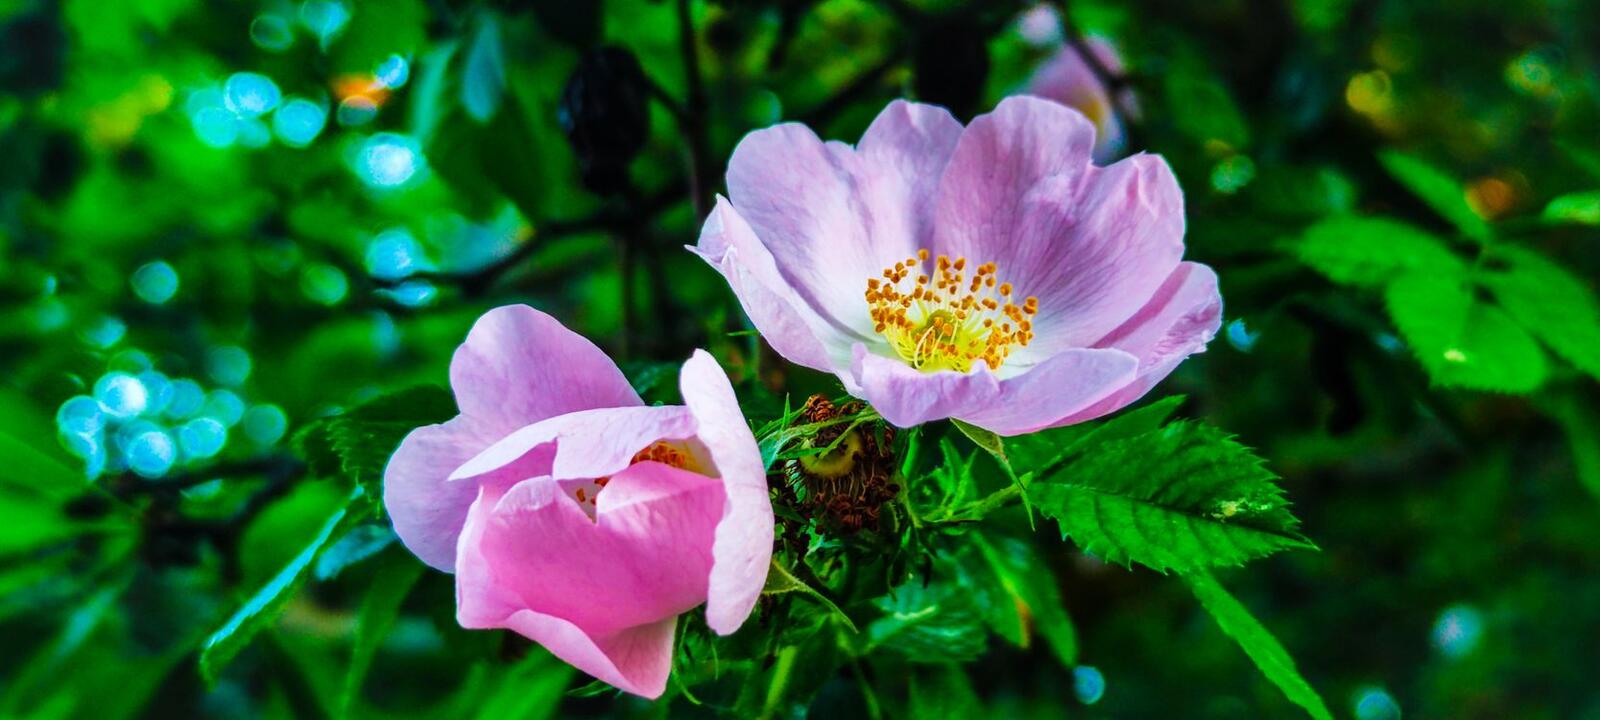 Free photo Rose hips in bloom. Dog rose hips. Rose blossom.